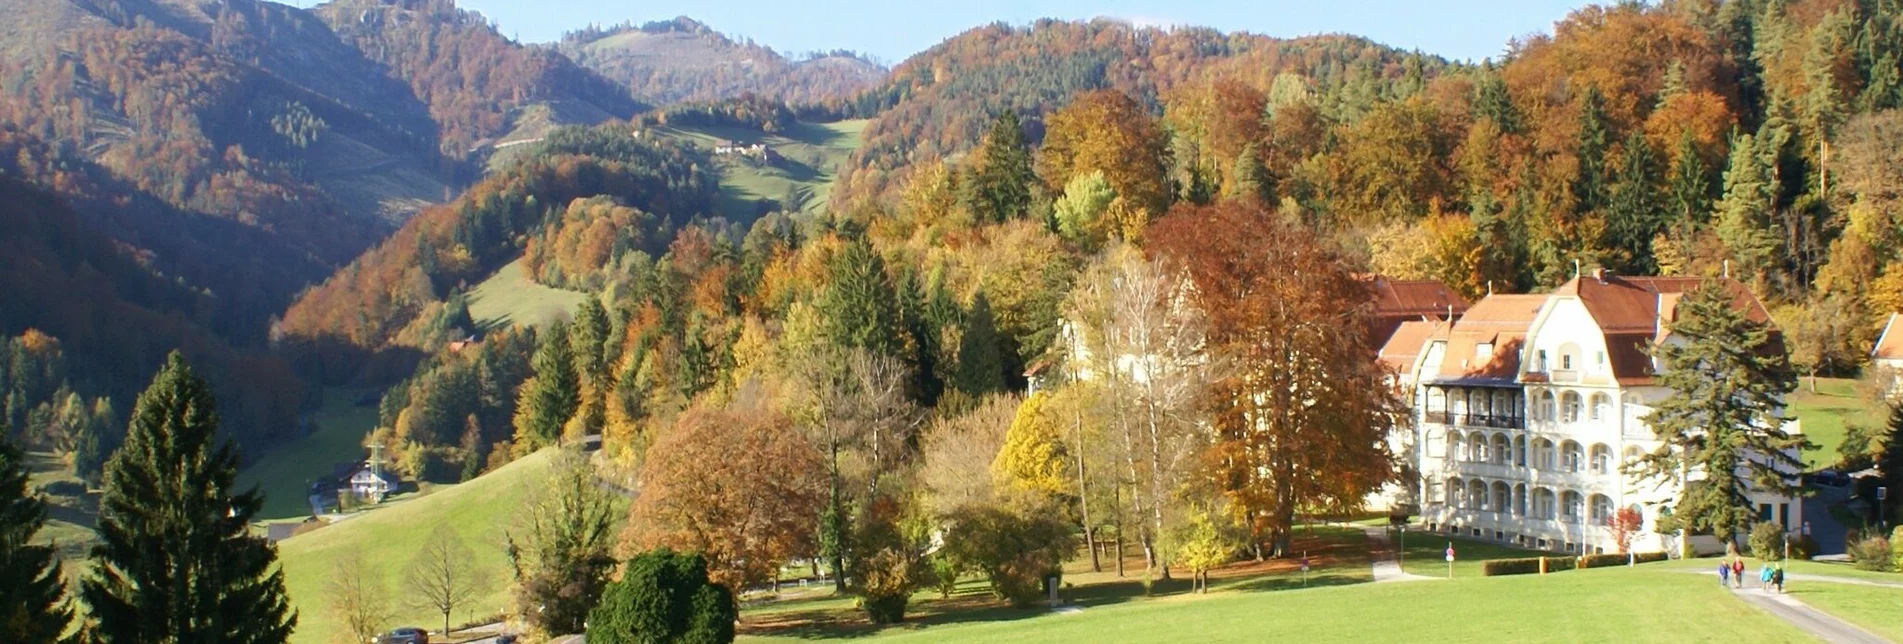 Hiking route Enzenbacher Familientour über den Gsollerkogel - Touren-Impression #1 | © Region Graz